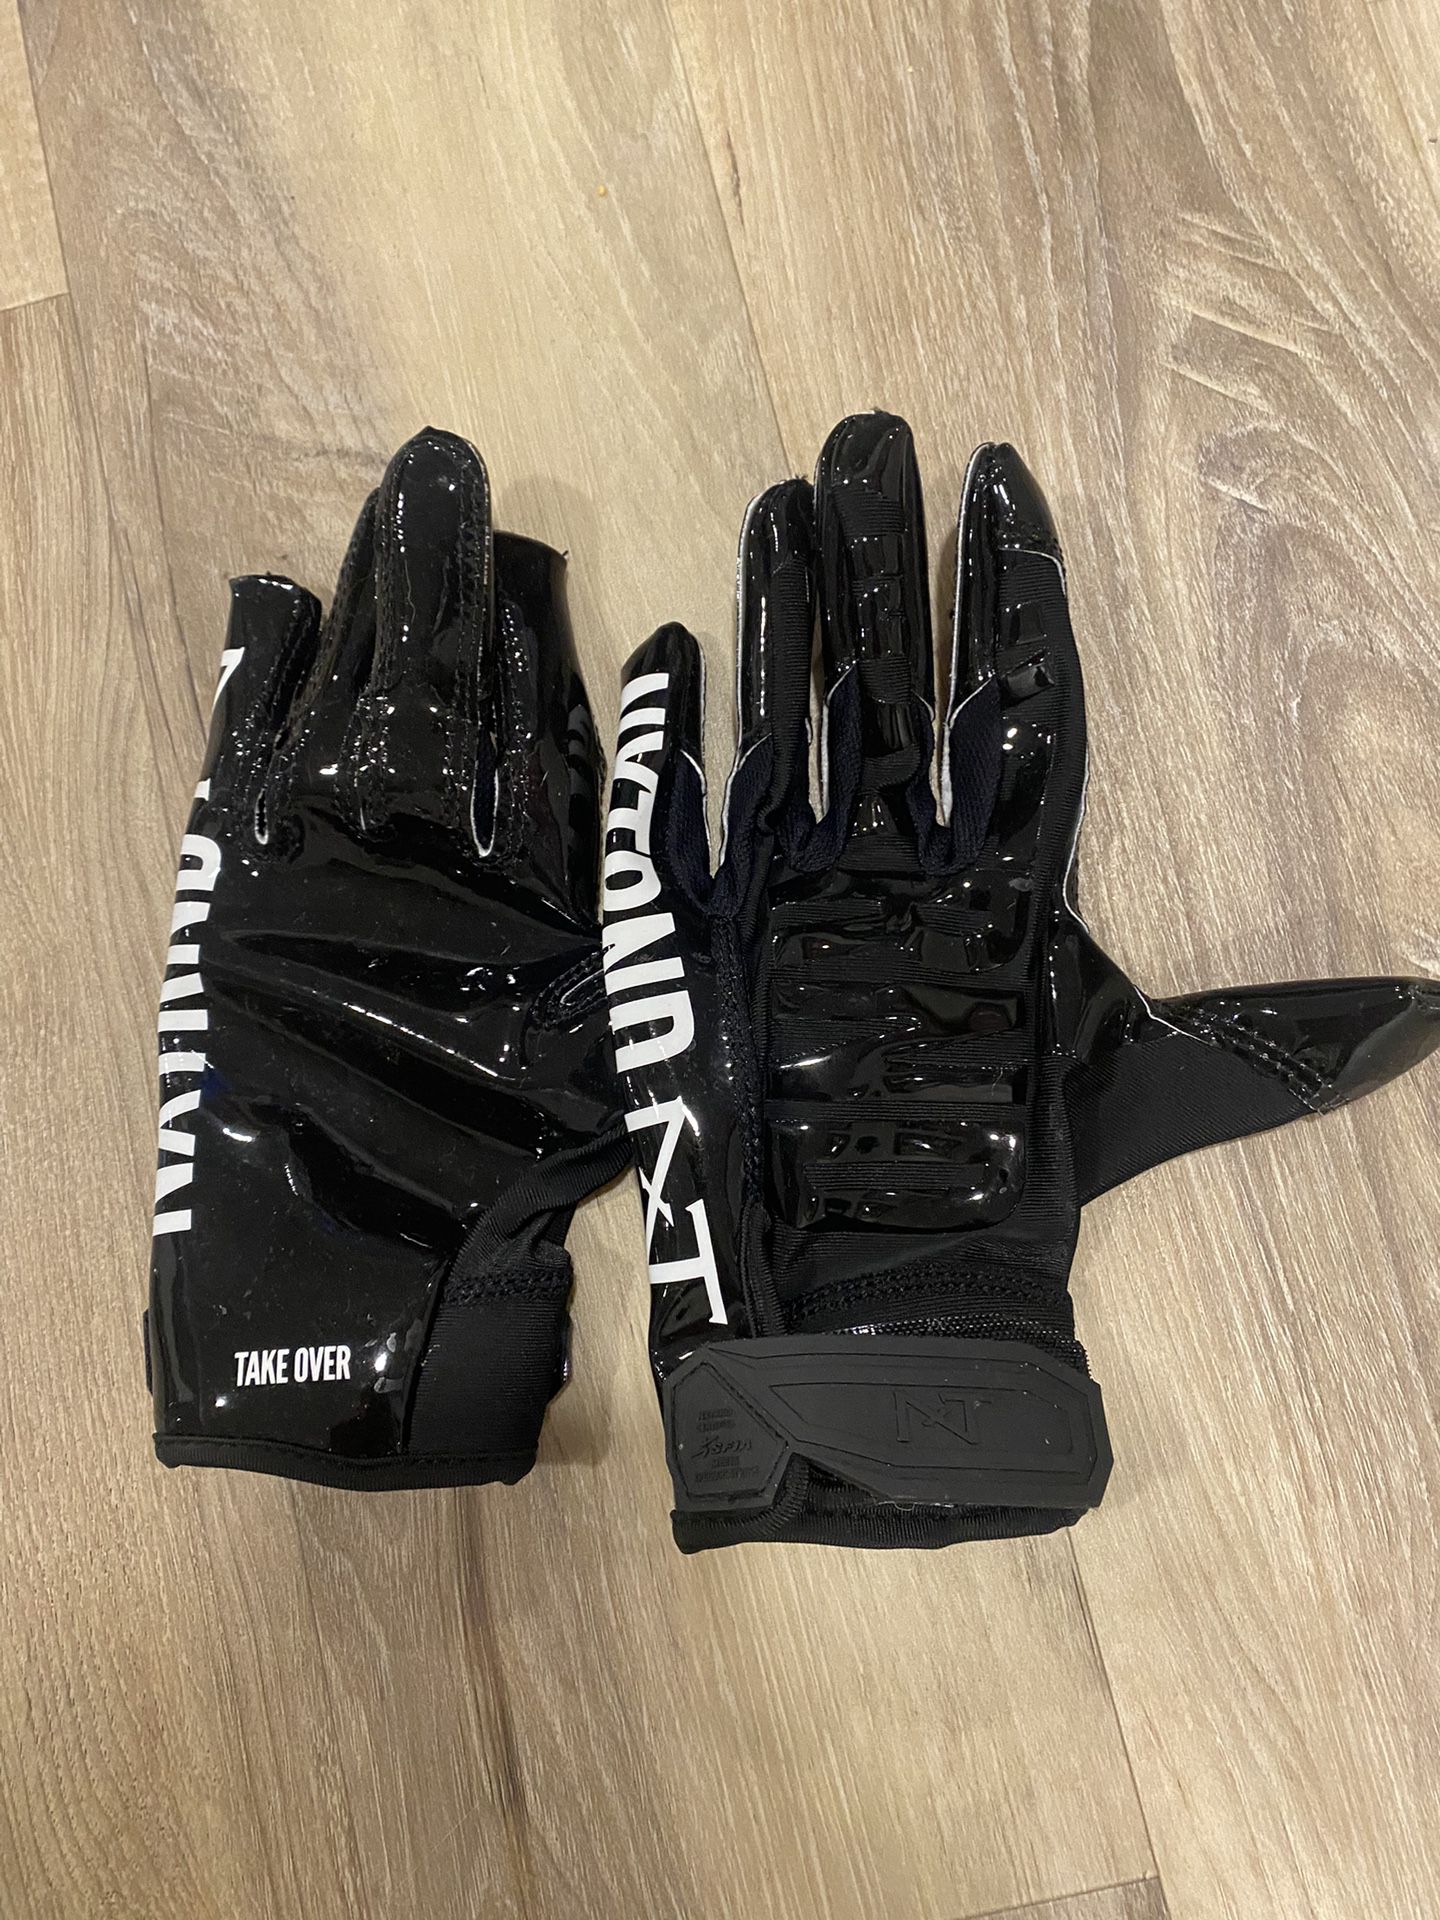 NXTRND Black Gloves